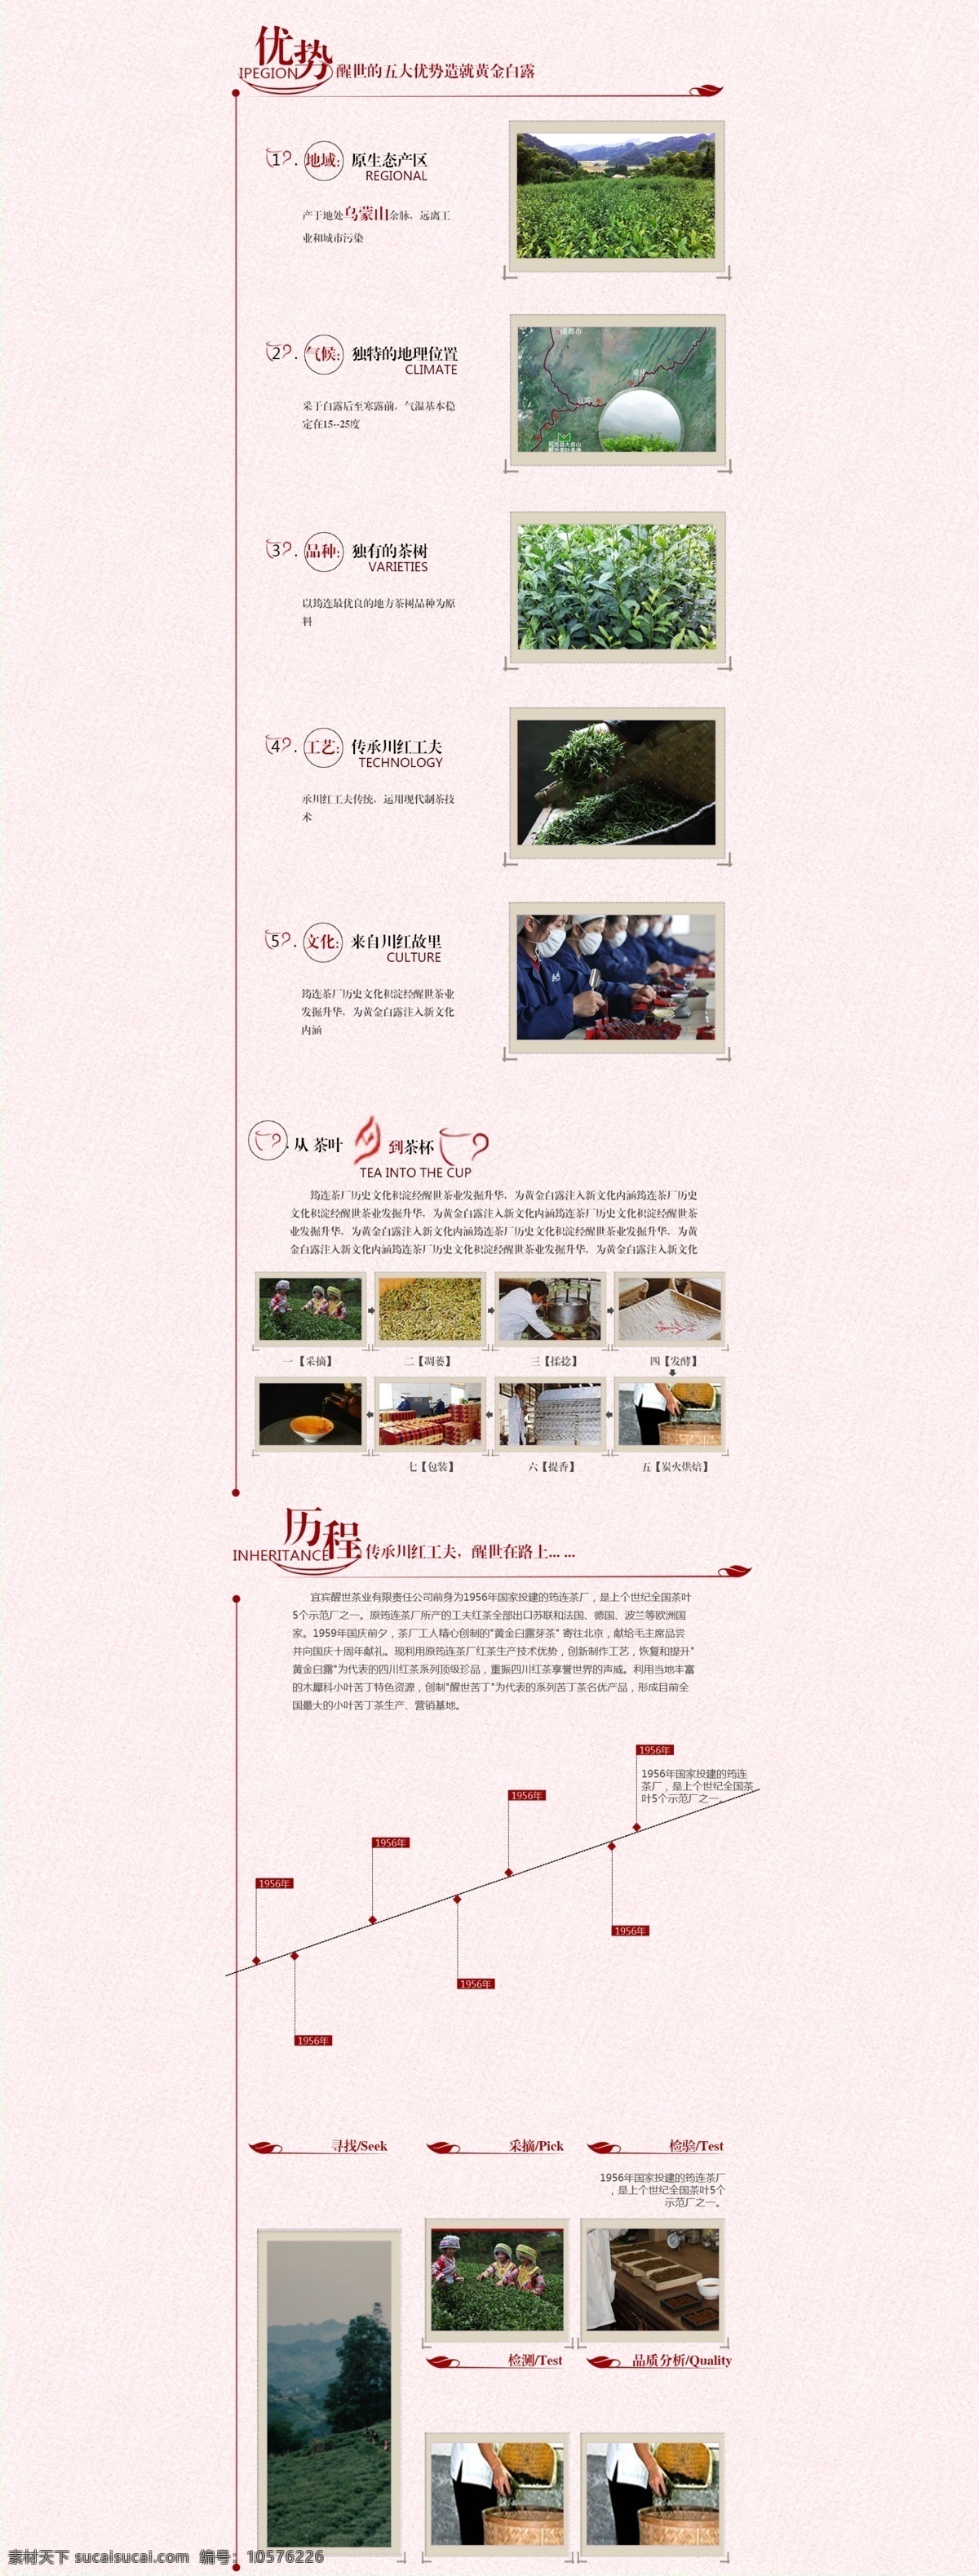 品牌优势 品牌故事 品牌讲述 品牌文化 淘宝品牌故事 品牌页面 web 界面设计 中文模板